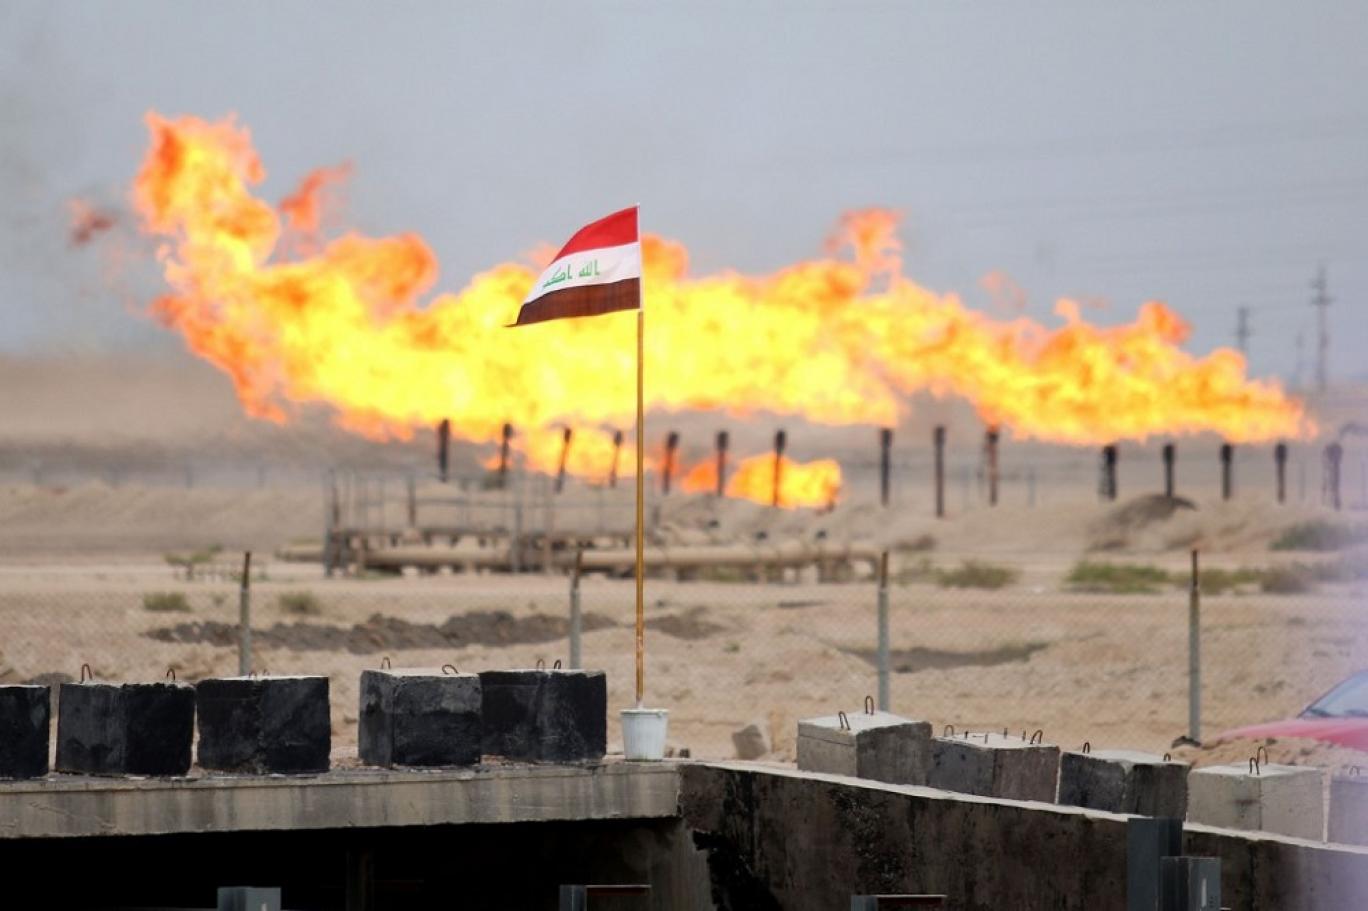 العراق: إيرادات النفط تسجل 7.7 مليار دولار في يناير